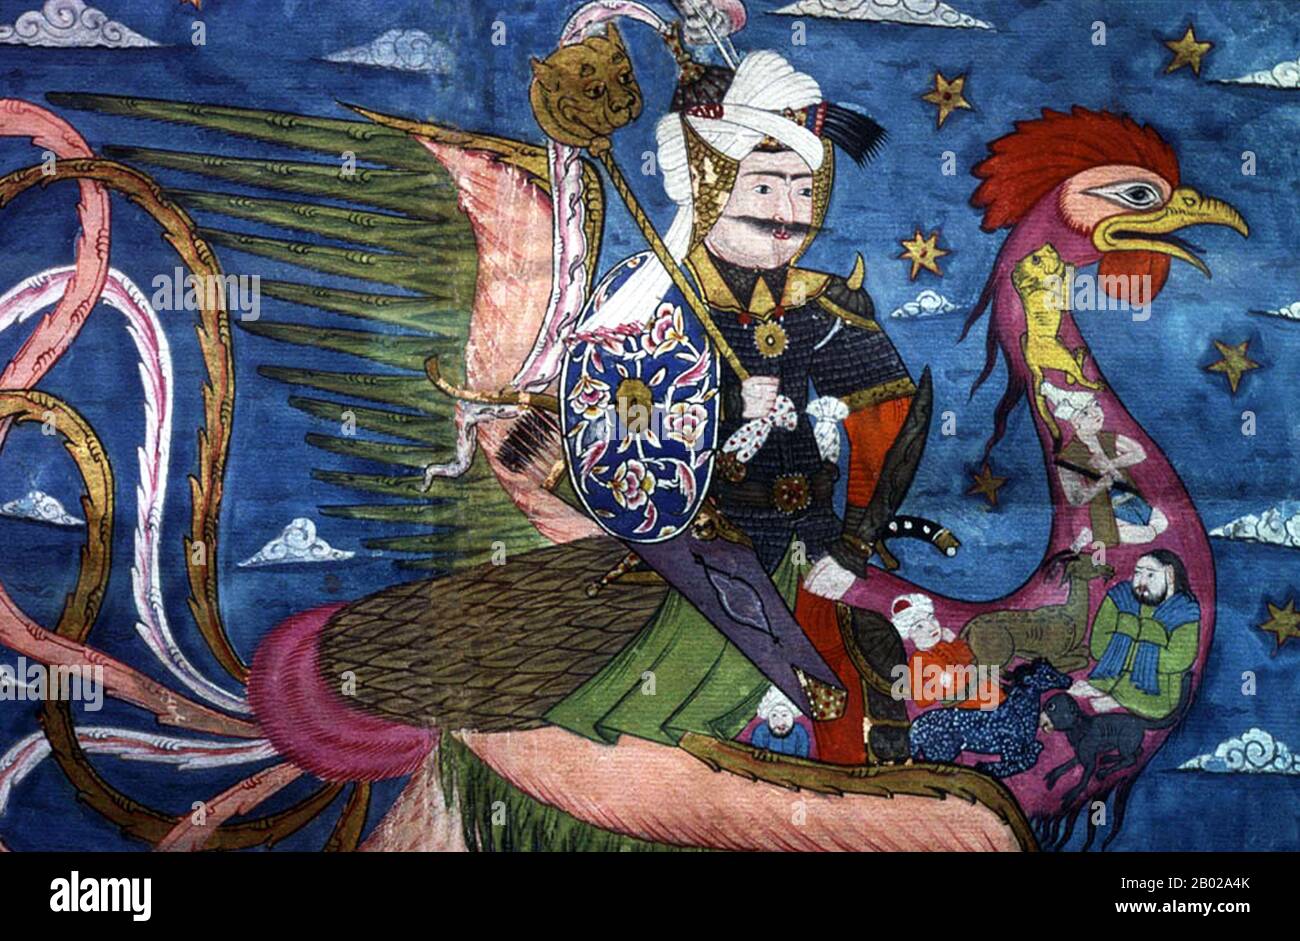 Siyah Kalem ou 'Black Pen' est le nom donné à l'école de peinture du XVe siècle attribuée à Mehmed Siyah Kalem. Rien n'est connu de sa vie, mais son travail indique qu'il était d'origine turque d'Asie centrale et qu'il connaissait bien le camp et la vie militaire. Les peintures apparaissent dans les albums de Conqueror, ainsi nommés parce que deux portraits du Sultan Mehmed II le Conqueror sont présents dans l'un d'eux. Les albums sont composés de miniatures tirées de manuscrits des XIVe, XVe et début du XVIe siècles, et une série de peintures est inscrite "oeuvre du Maître Muḥammad Siyah Kalem". Som Banque D'Images